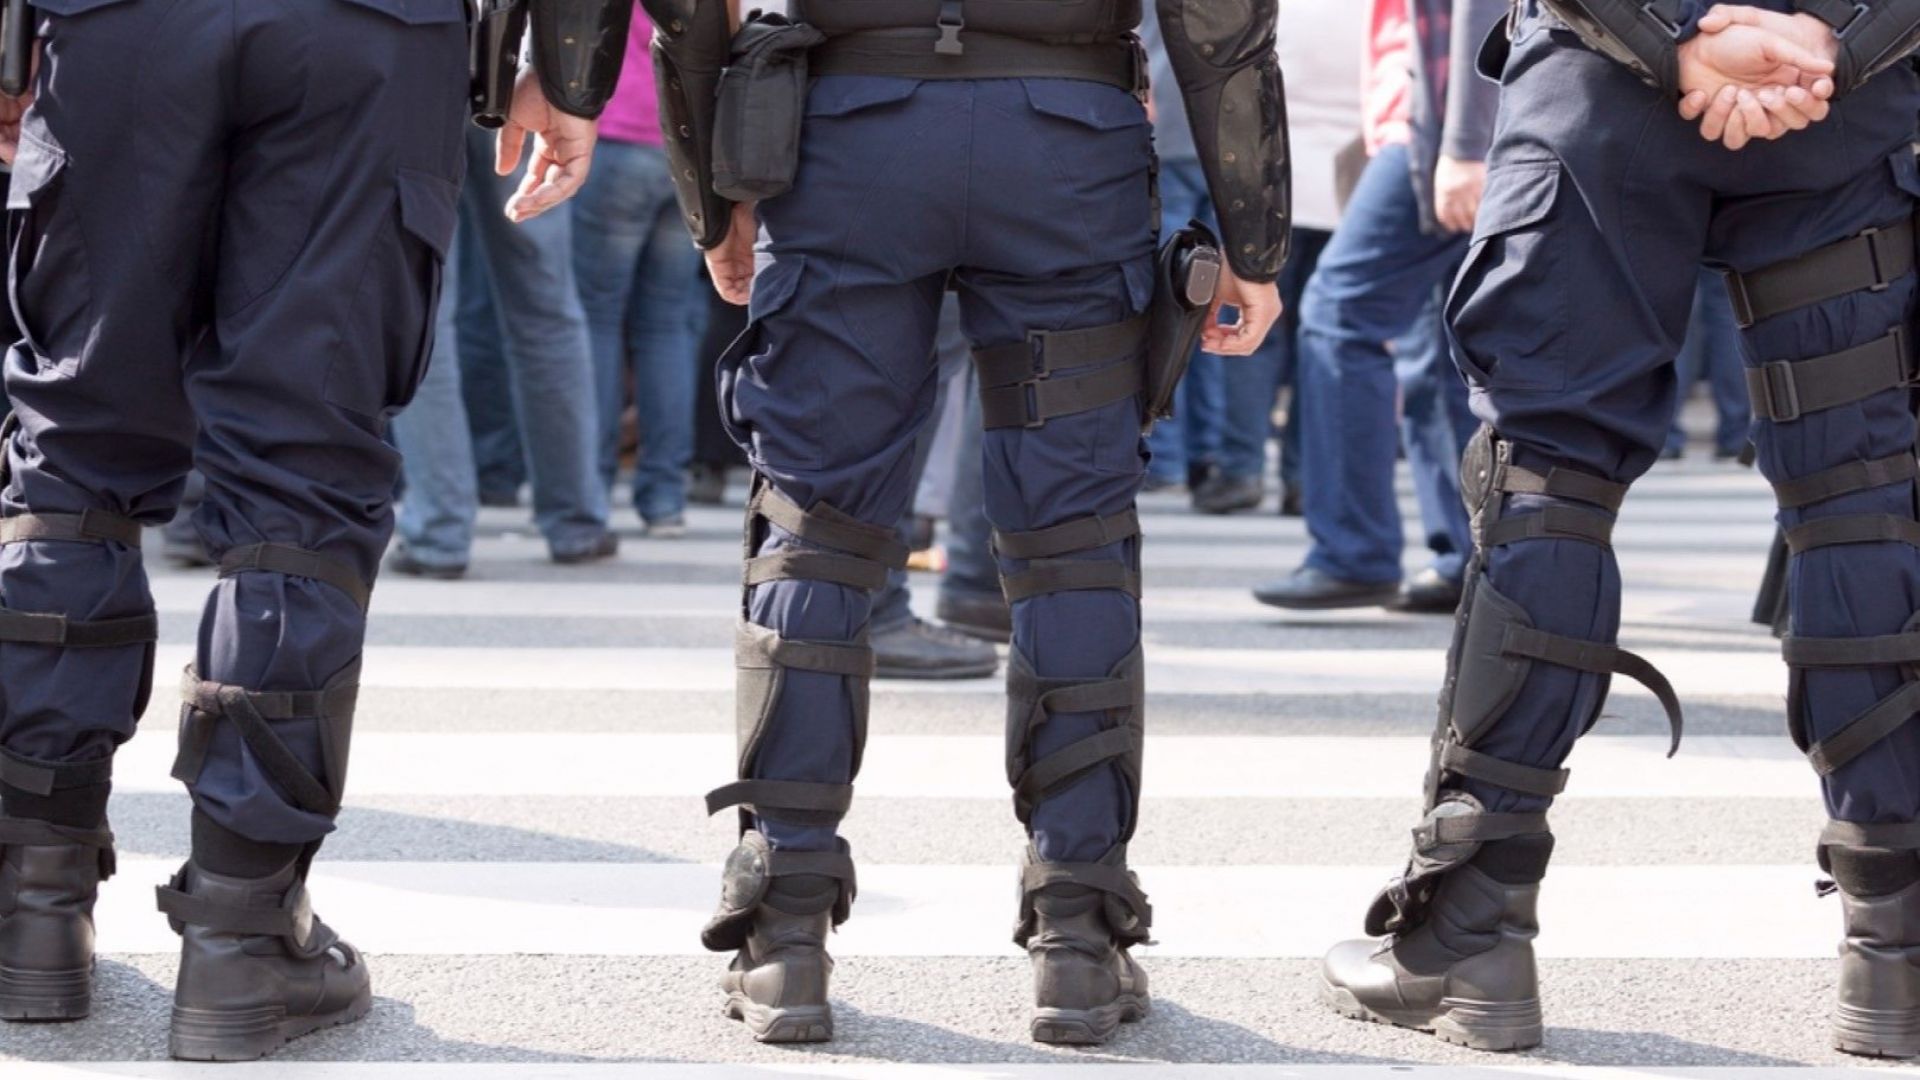 Българинът осъден за подготовка на терористичен акт в Австрия е